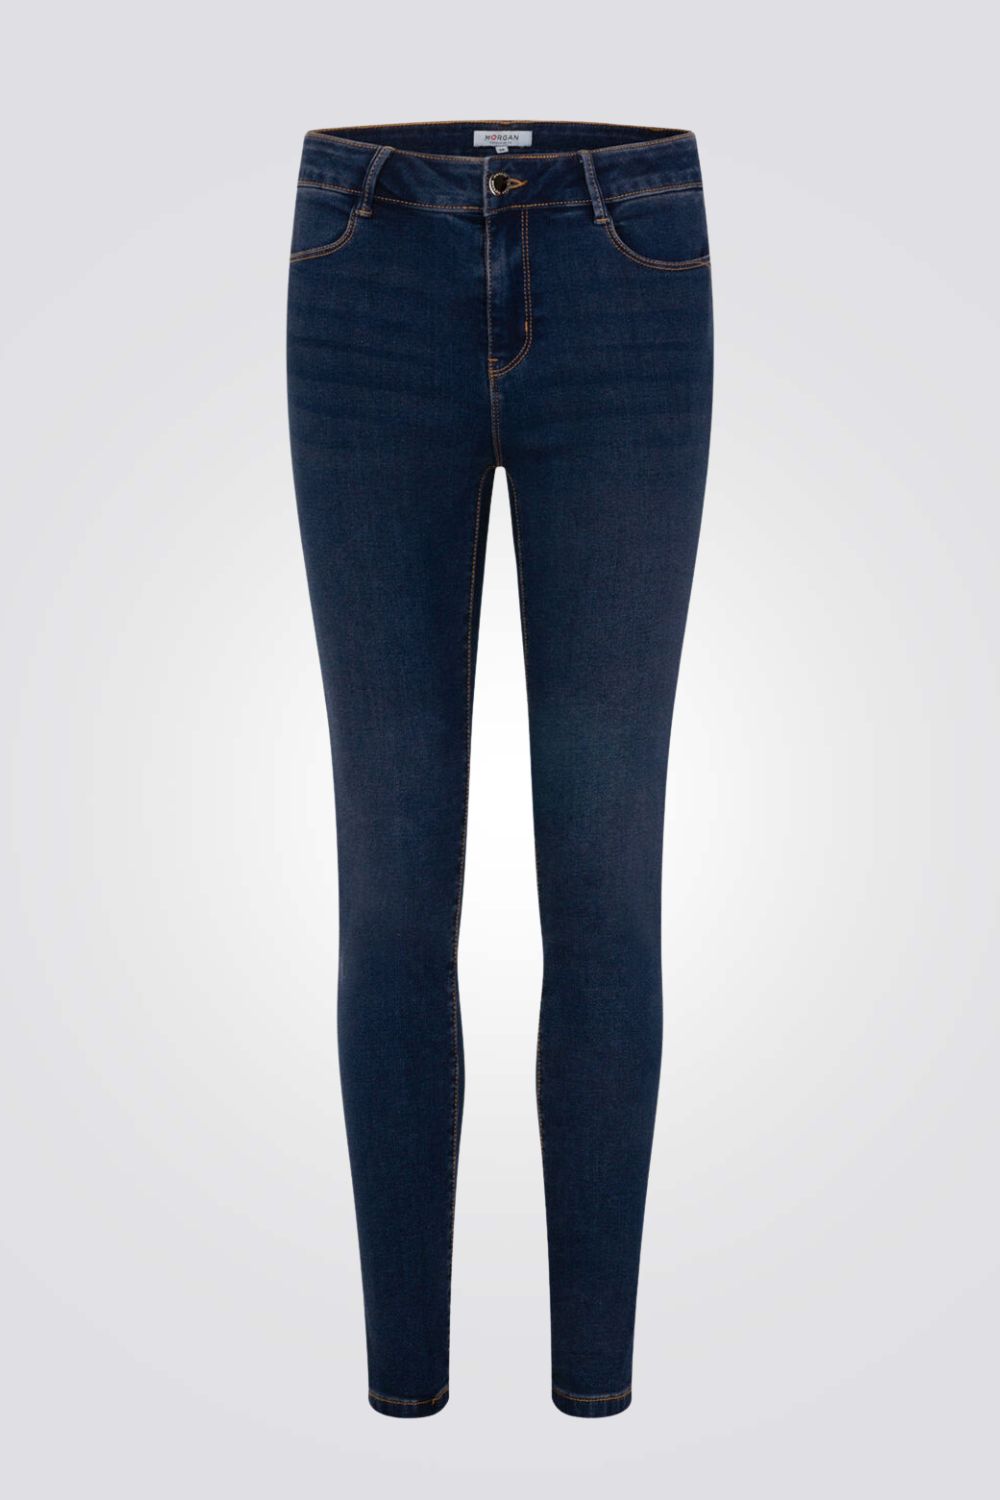 ג'ינס לנשים בצבע כחול כהה